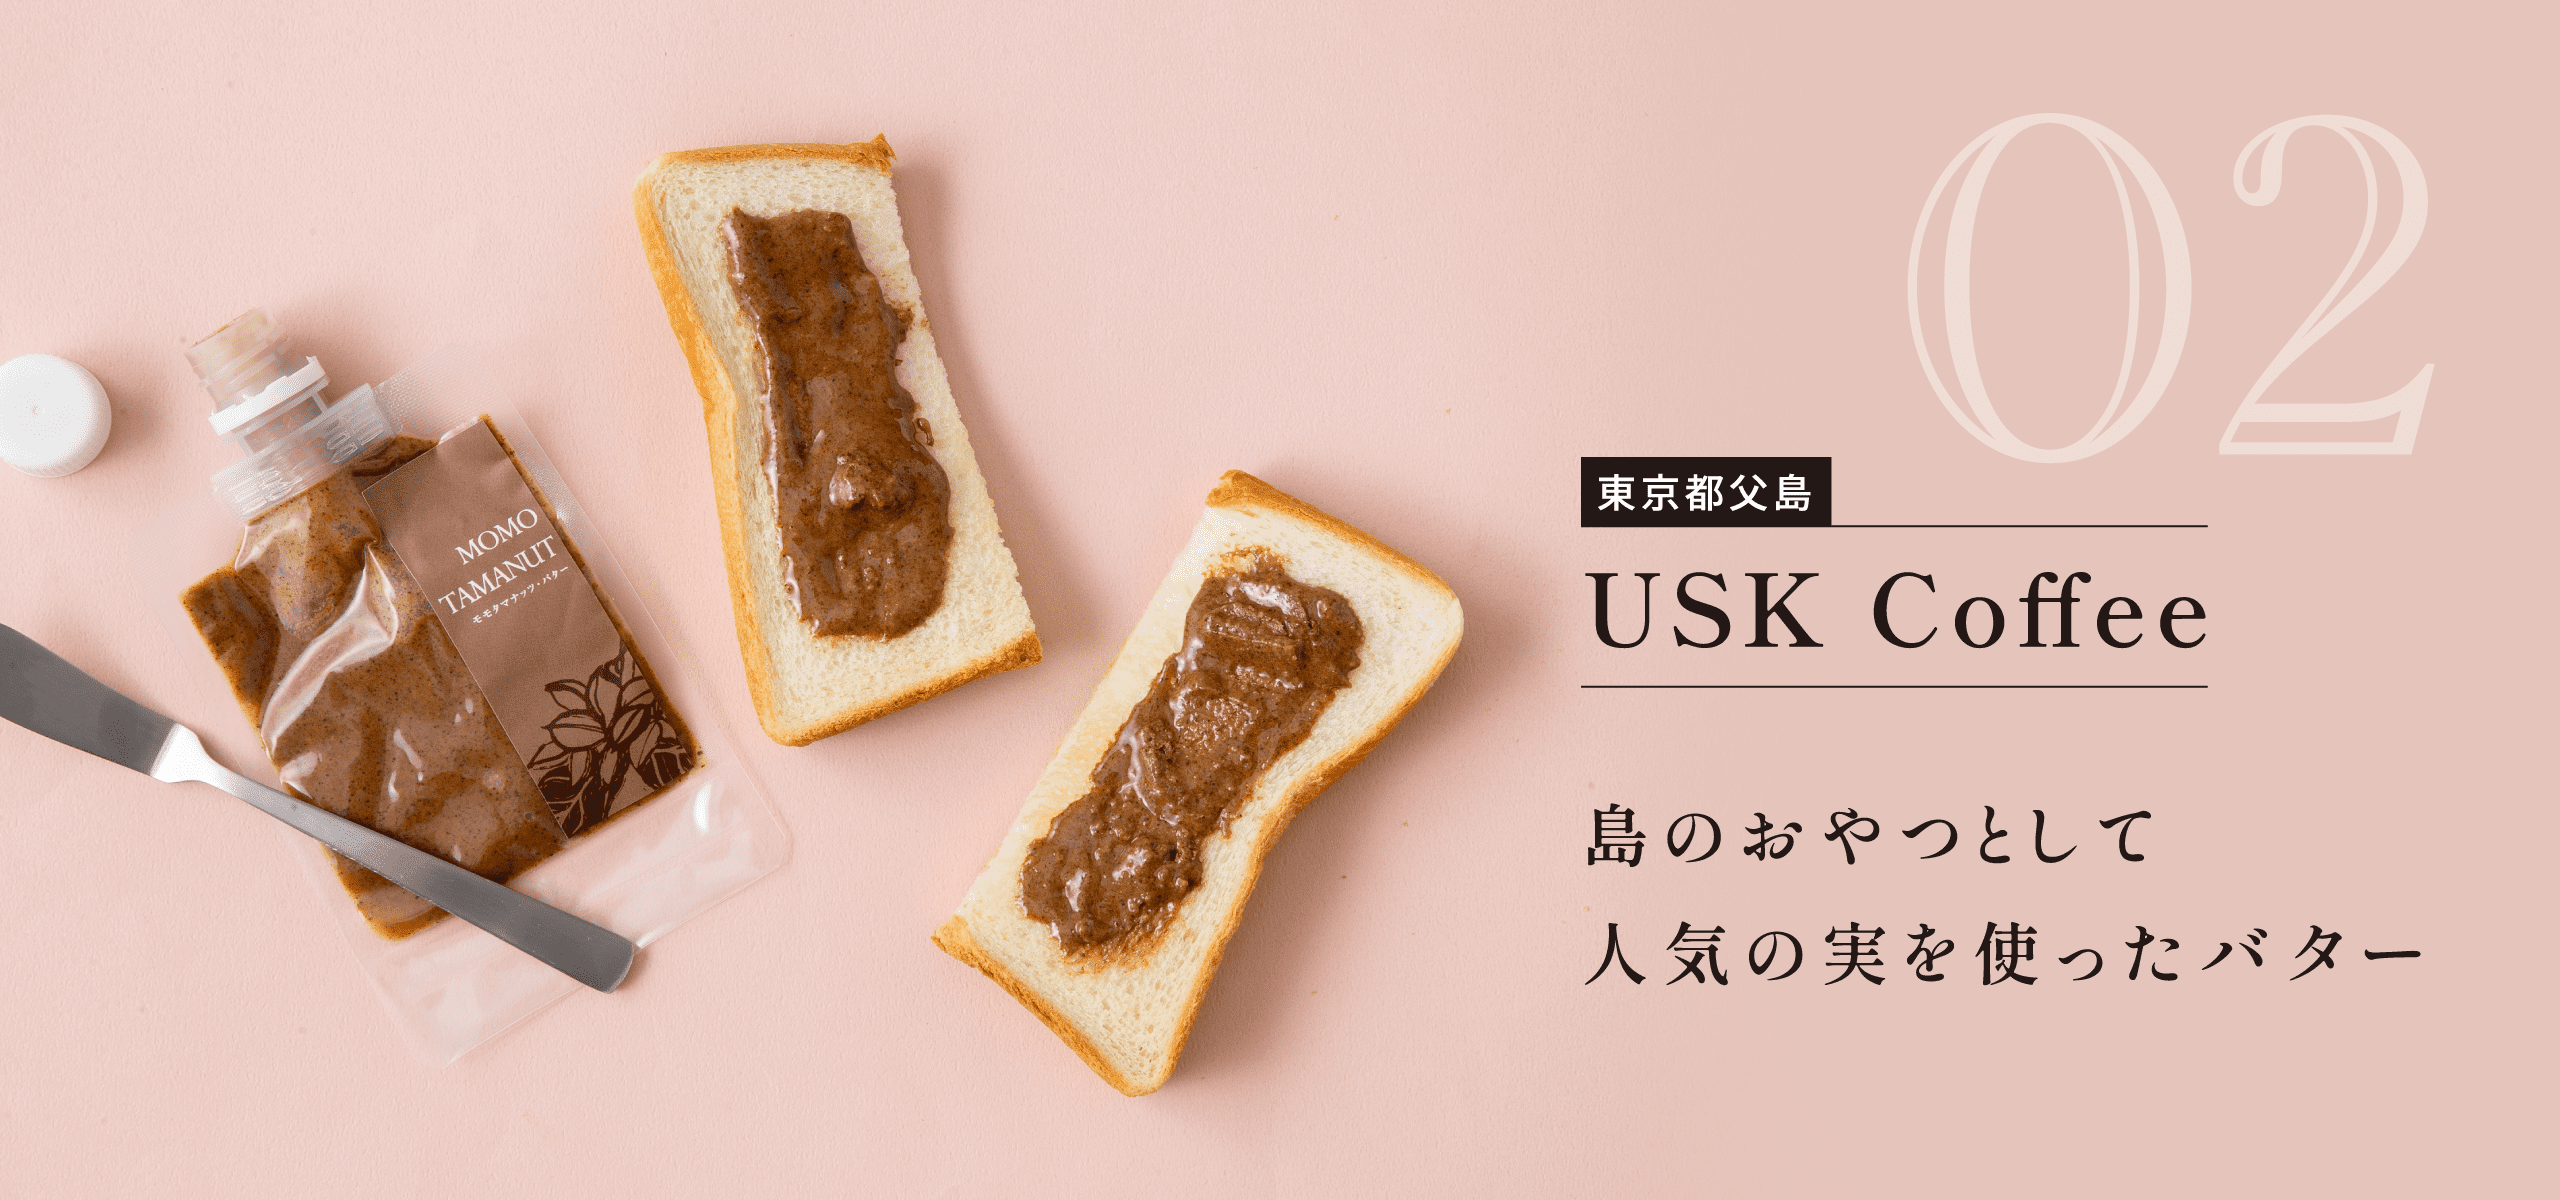 東京都父島 USK Coffee 島のおやつとして人気の実を使ったバター